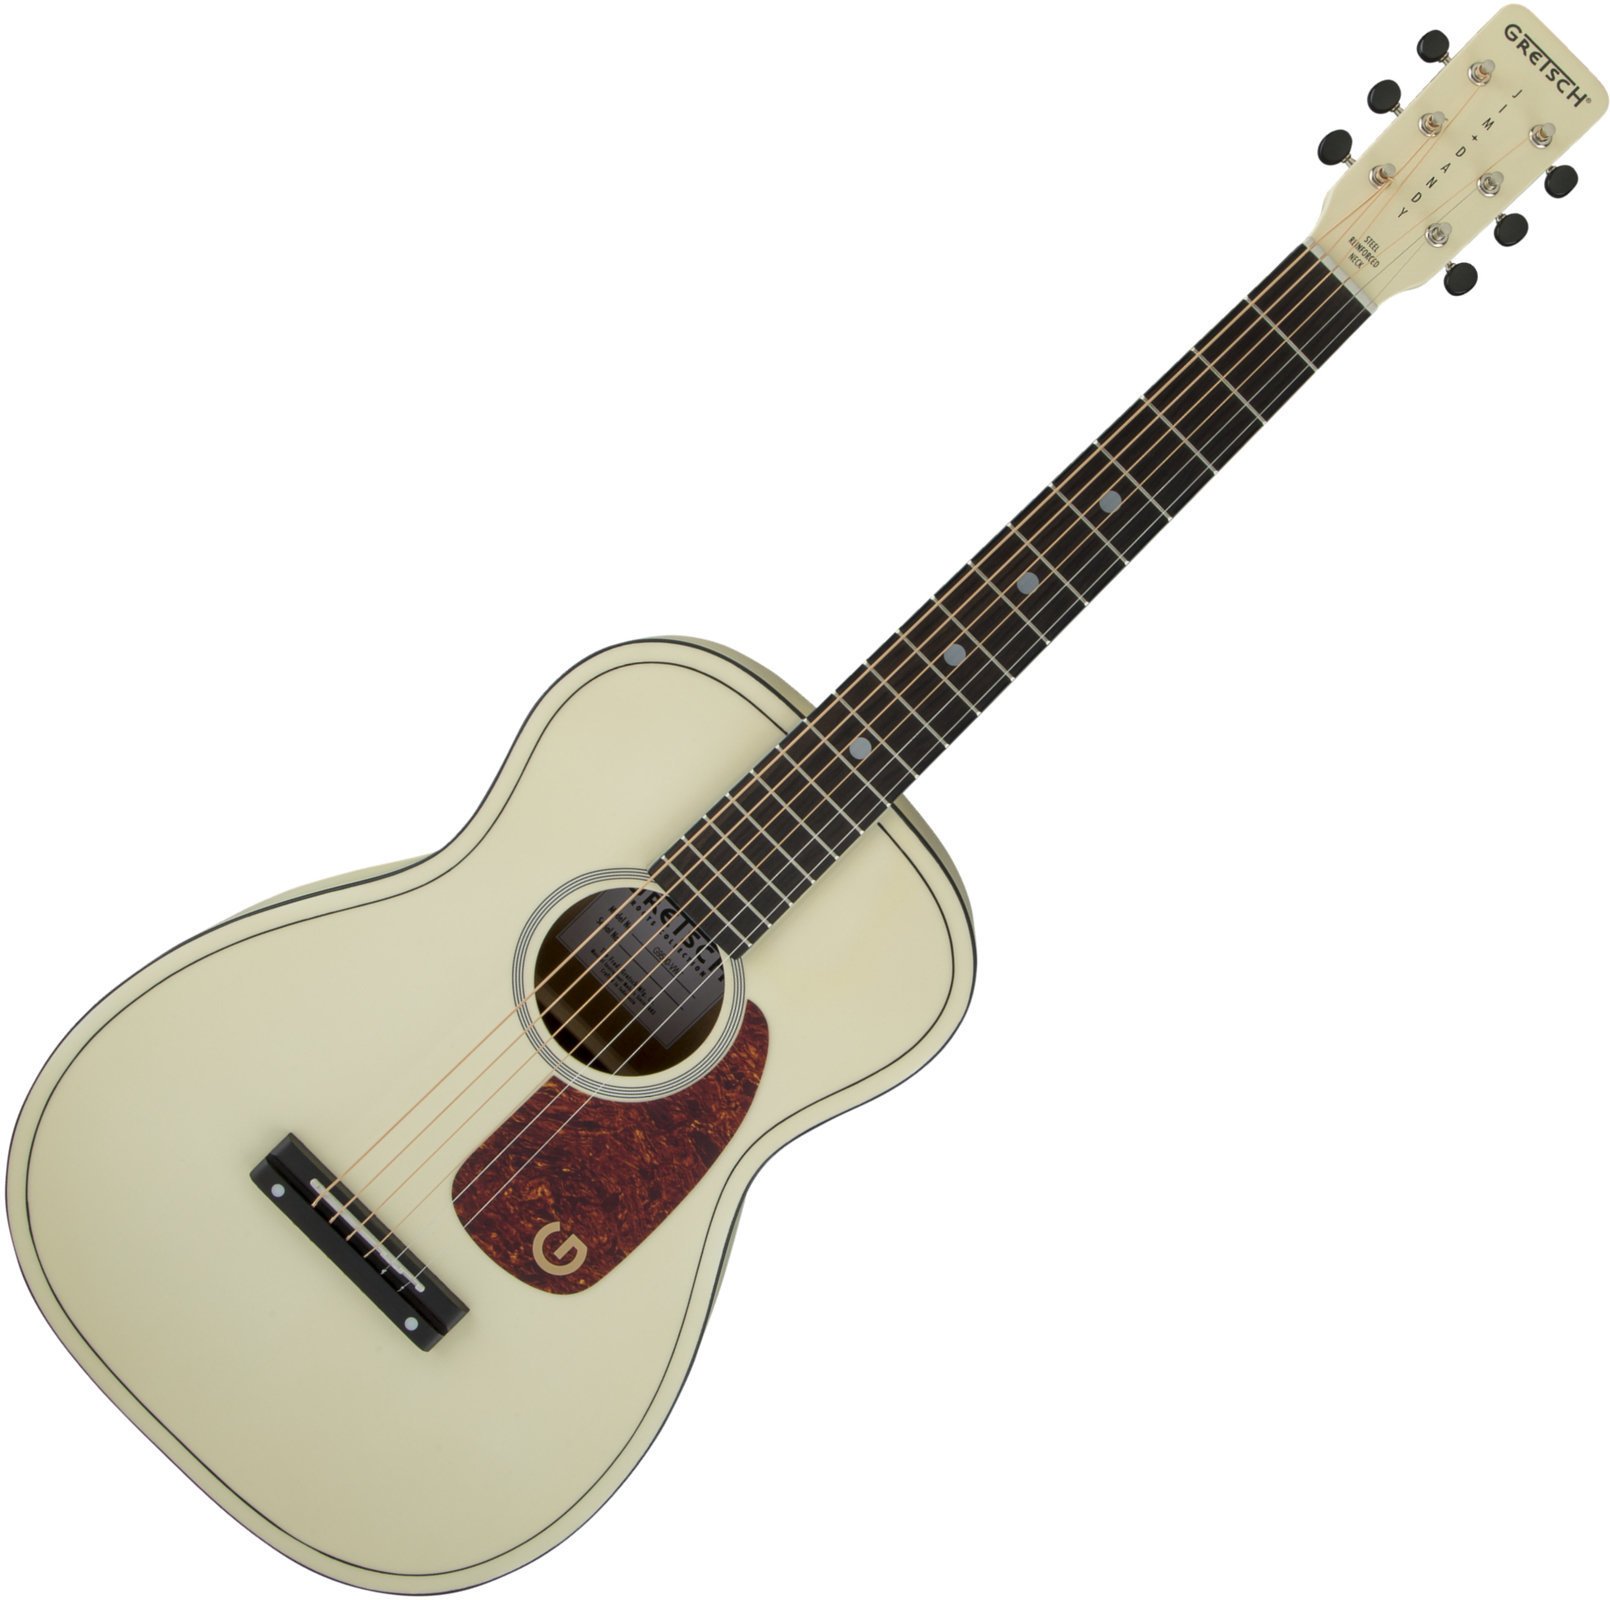 Akustikgitarre Gretsch G9500 Jim Dandy Limited Edition Vintage White